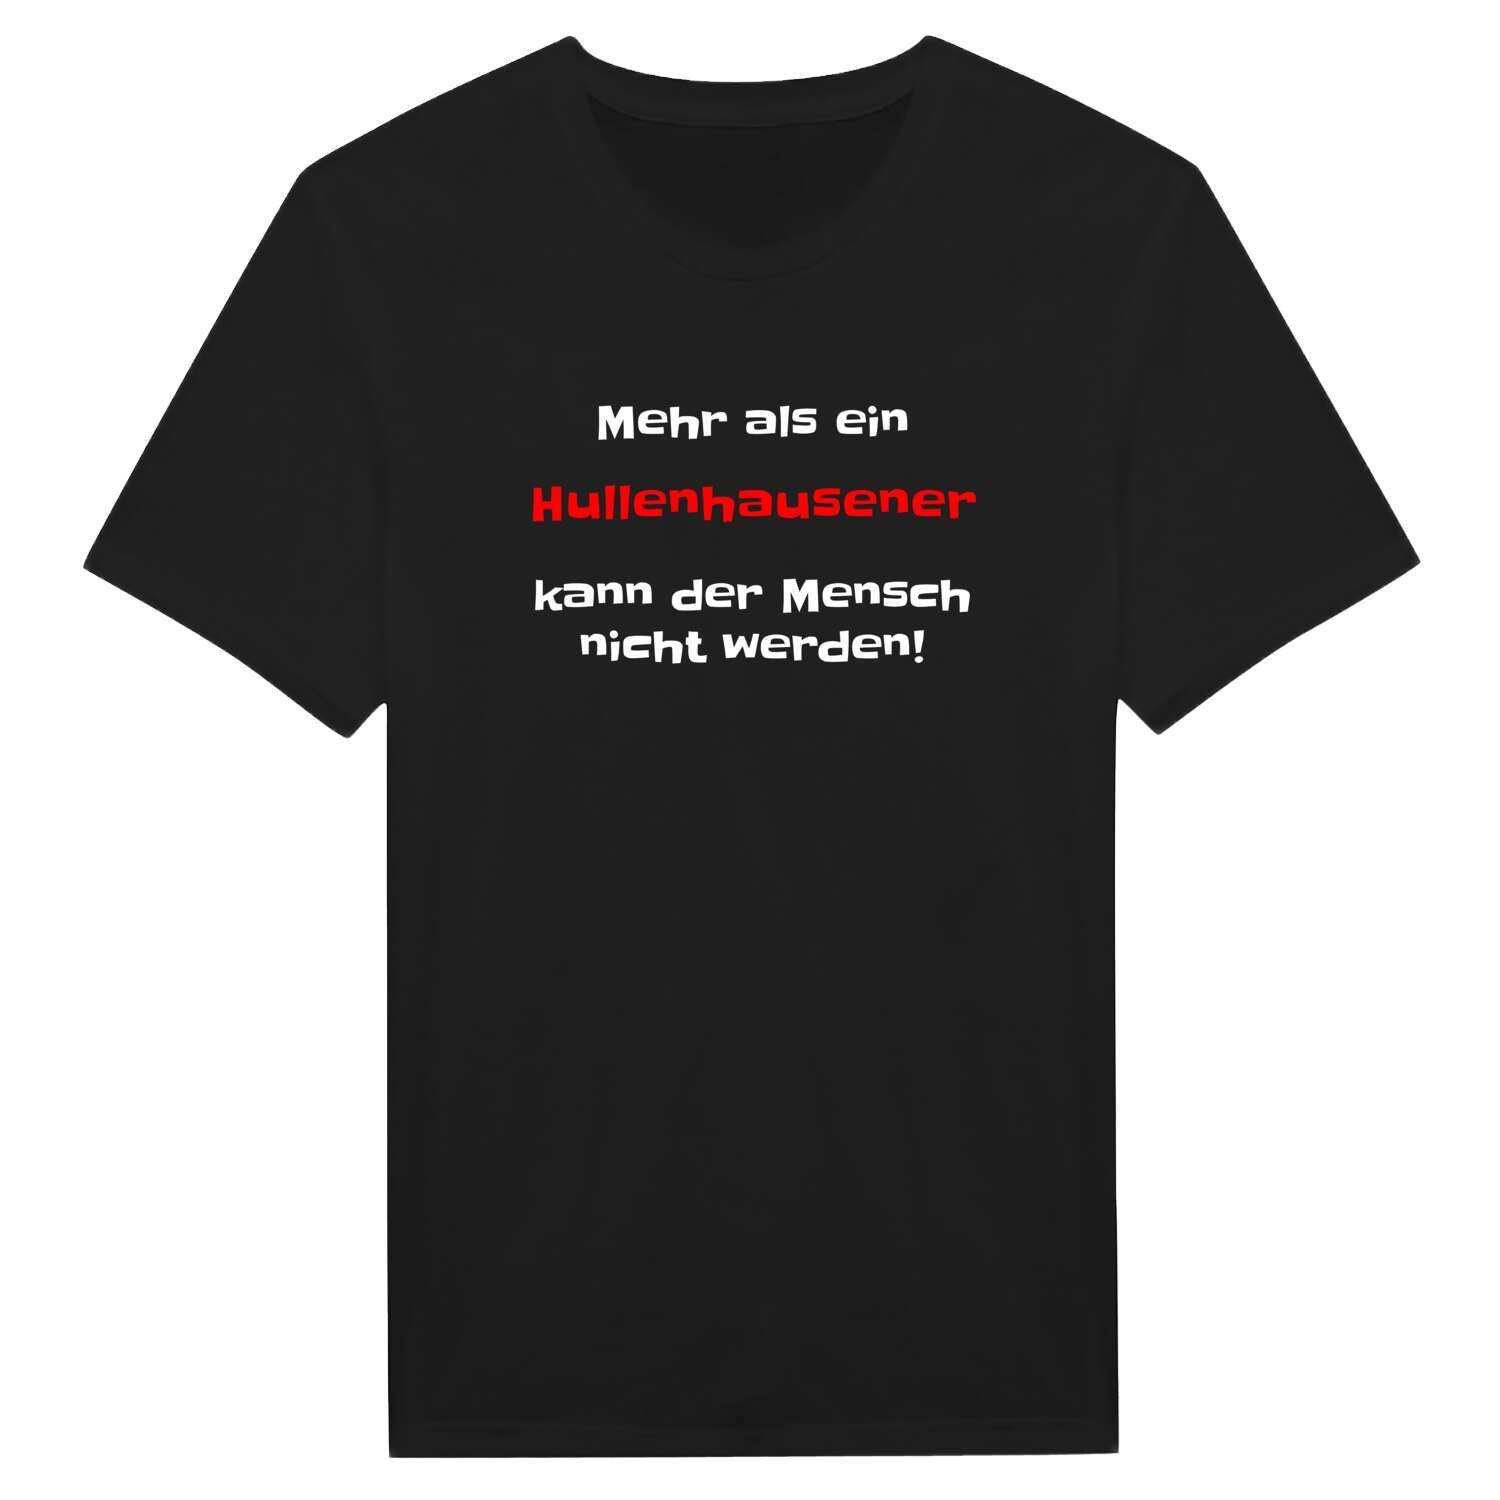 Hullenhausen T-Shirt »Mehr als ein«